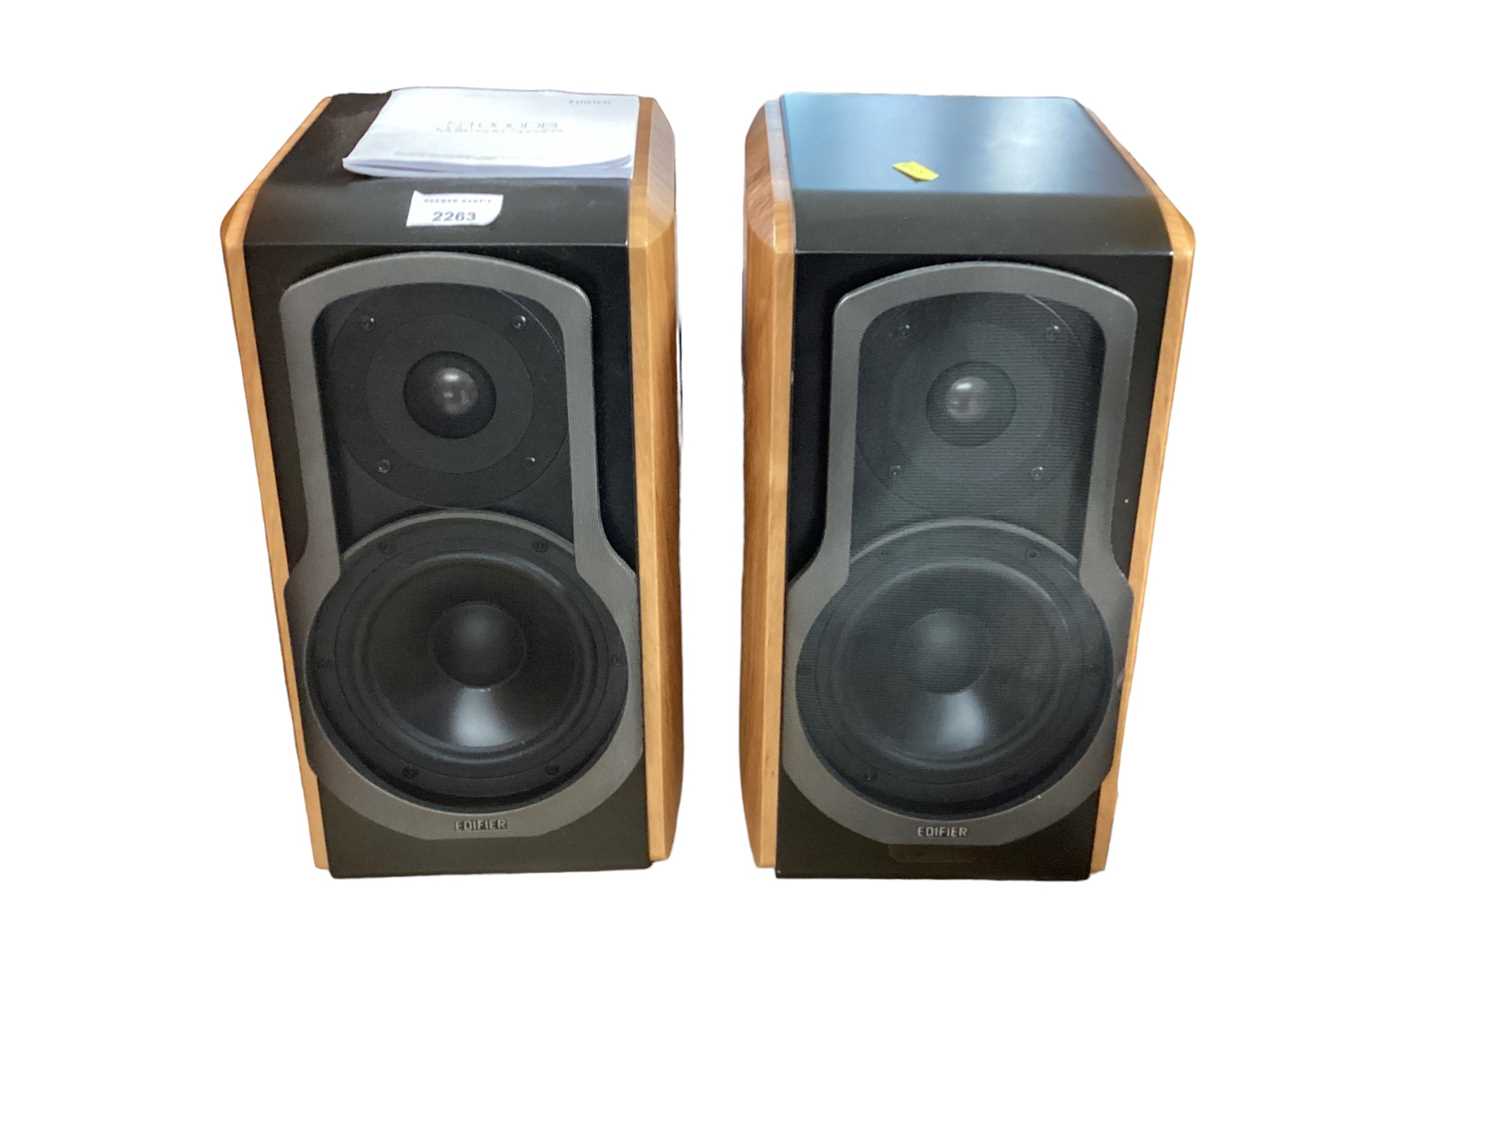 Pair of Edifier S1000DB Bluetooth speakers